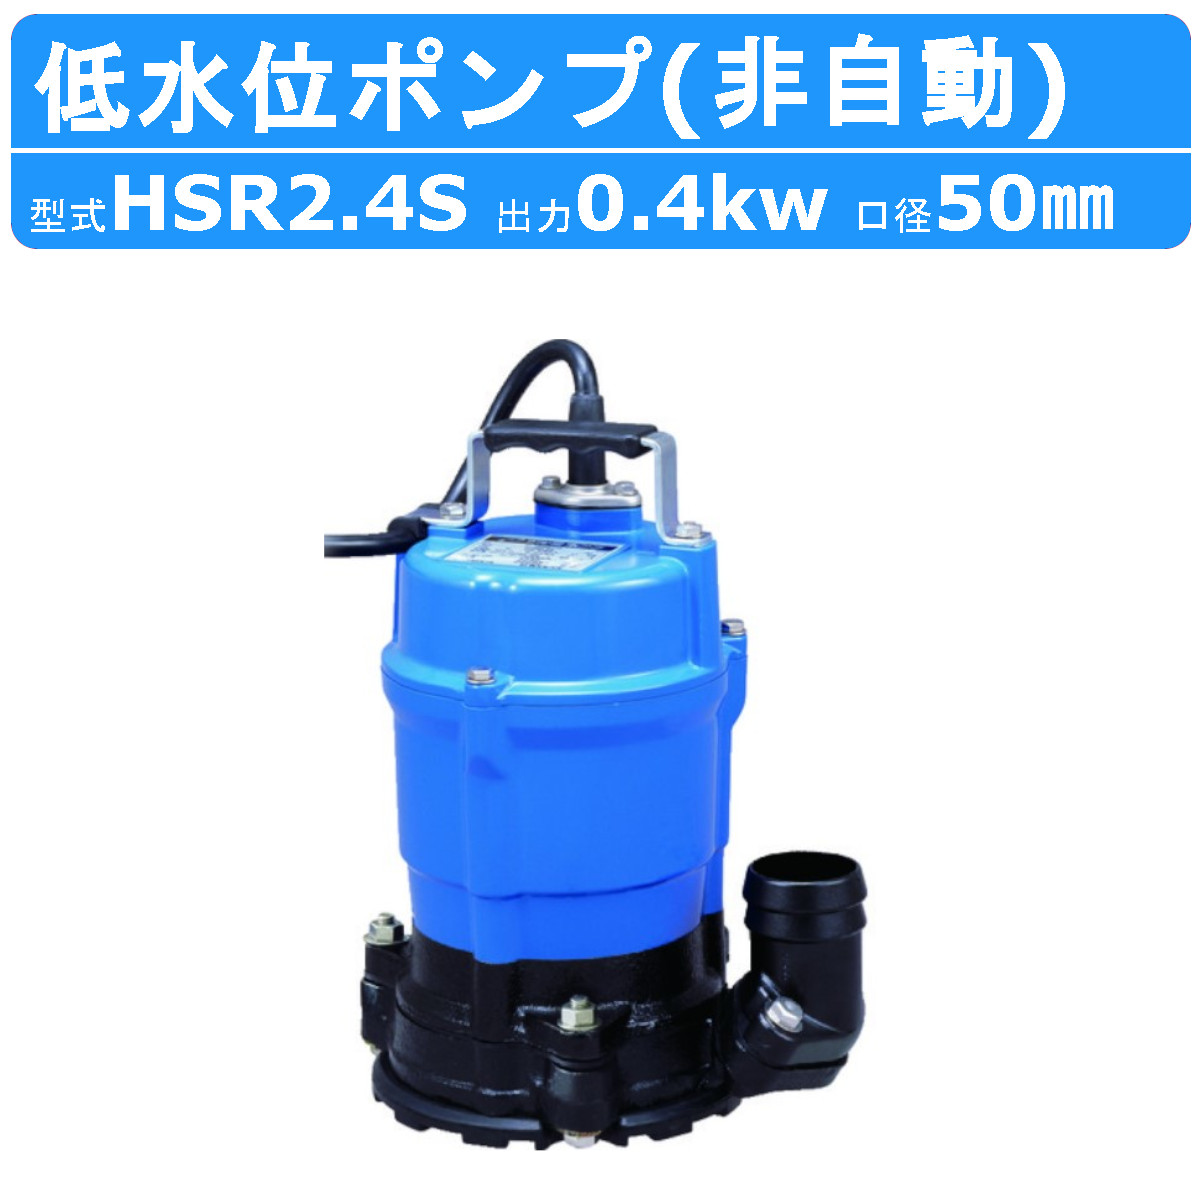 ツルミ 鶴見 水中ポンプ HSR2.4S 床水排水用 小型 100v ツルミポンプ 